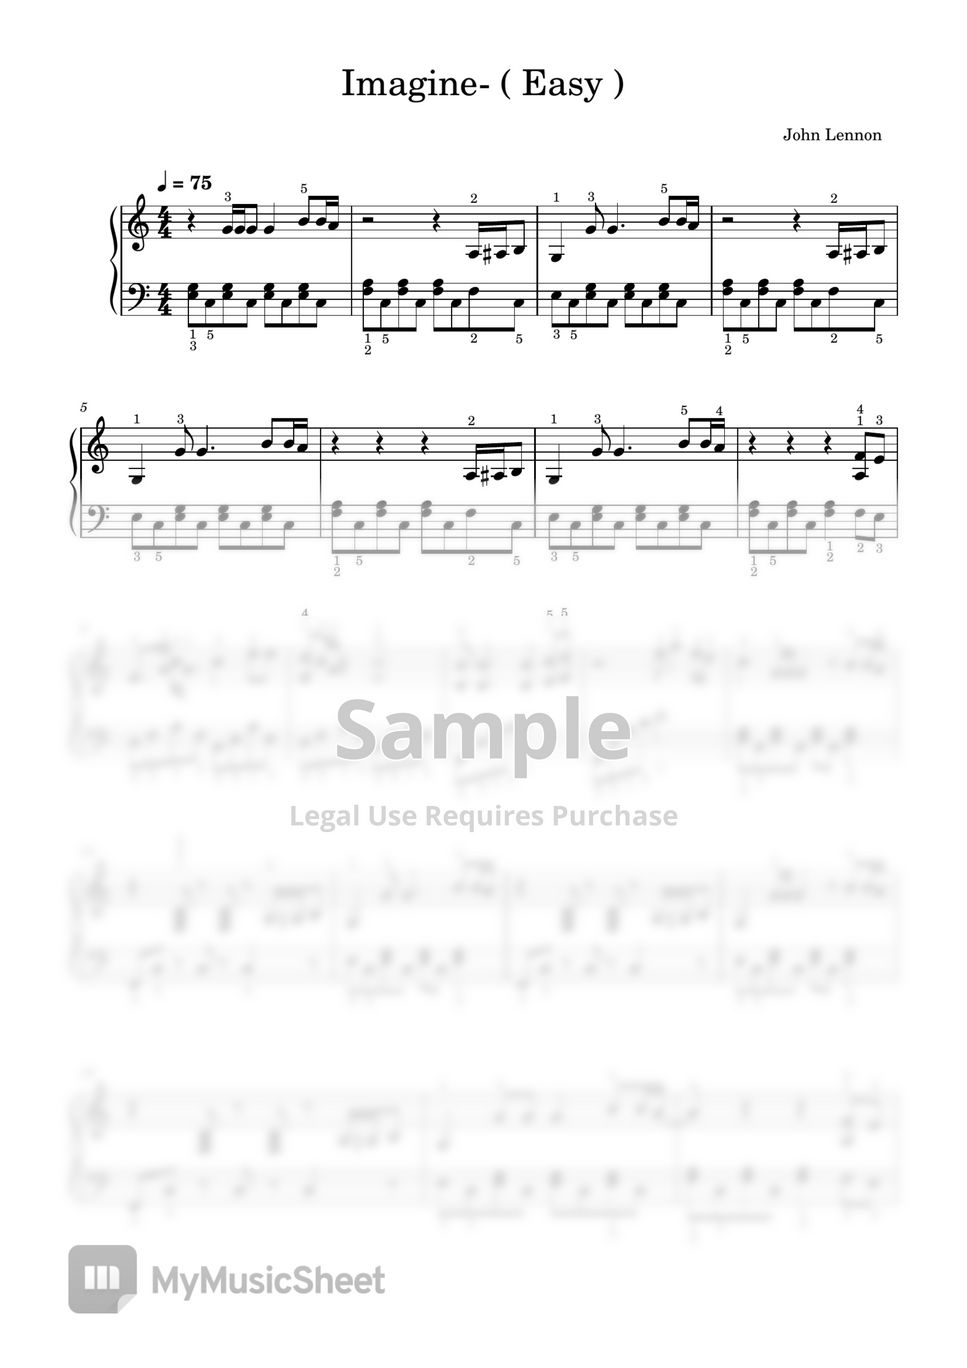 John Lennon - Imagine (Easy Level) by SangHeart play